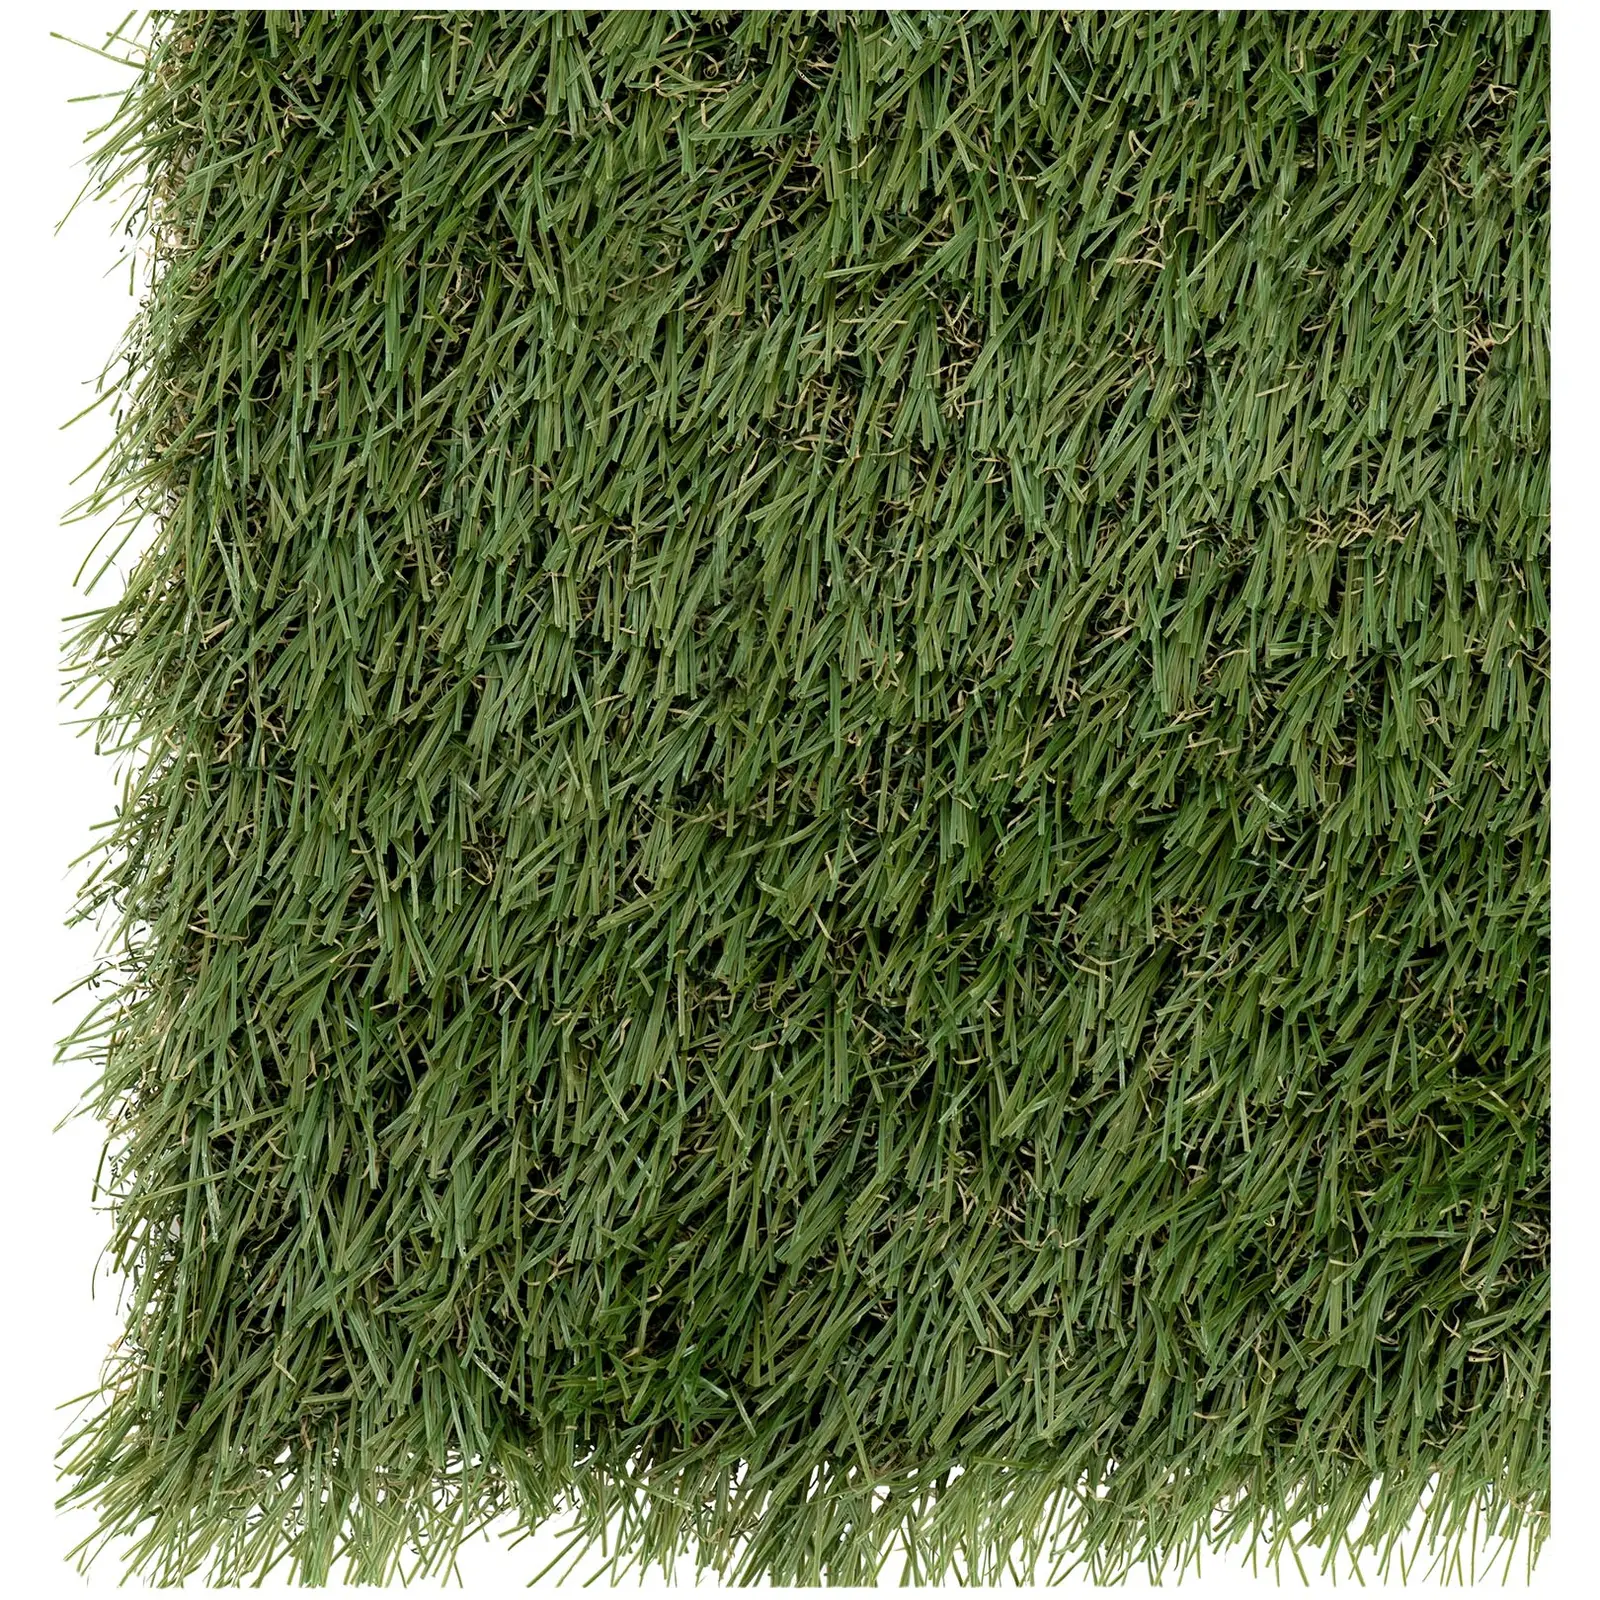 Umělý trávník - 505 x 200 cm - výška: 30 mm - hustota stehů: 14/10 cm - odolný proti UV záření